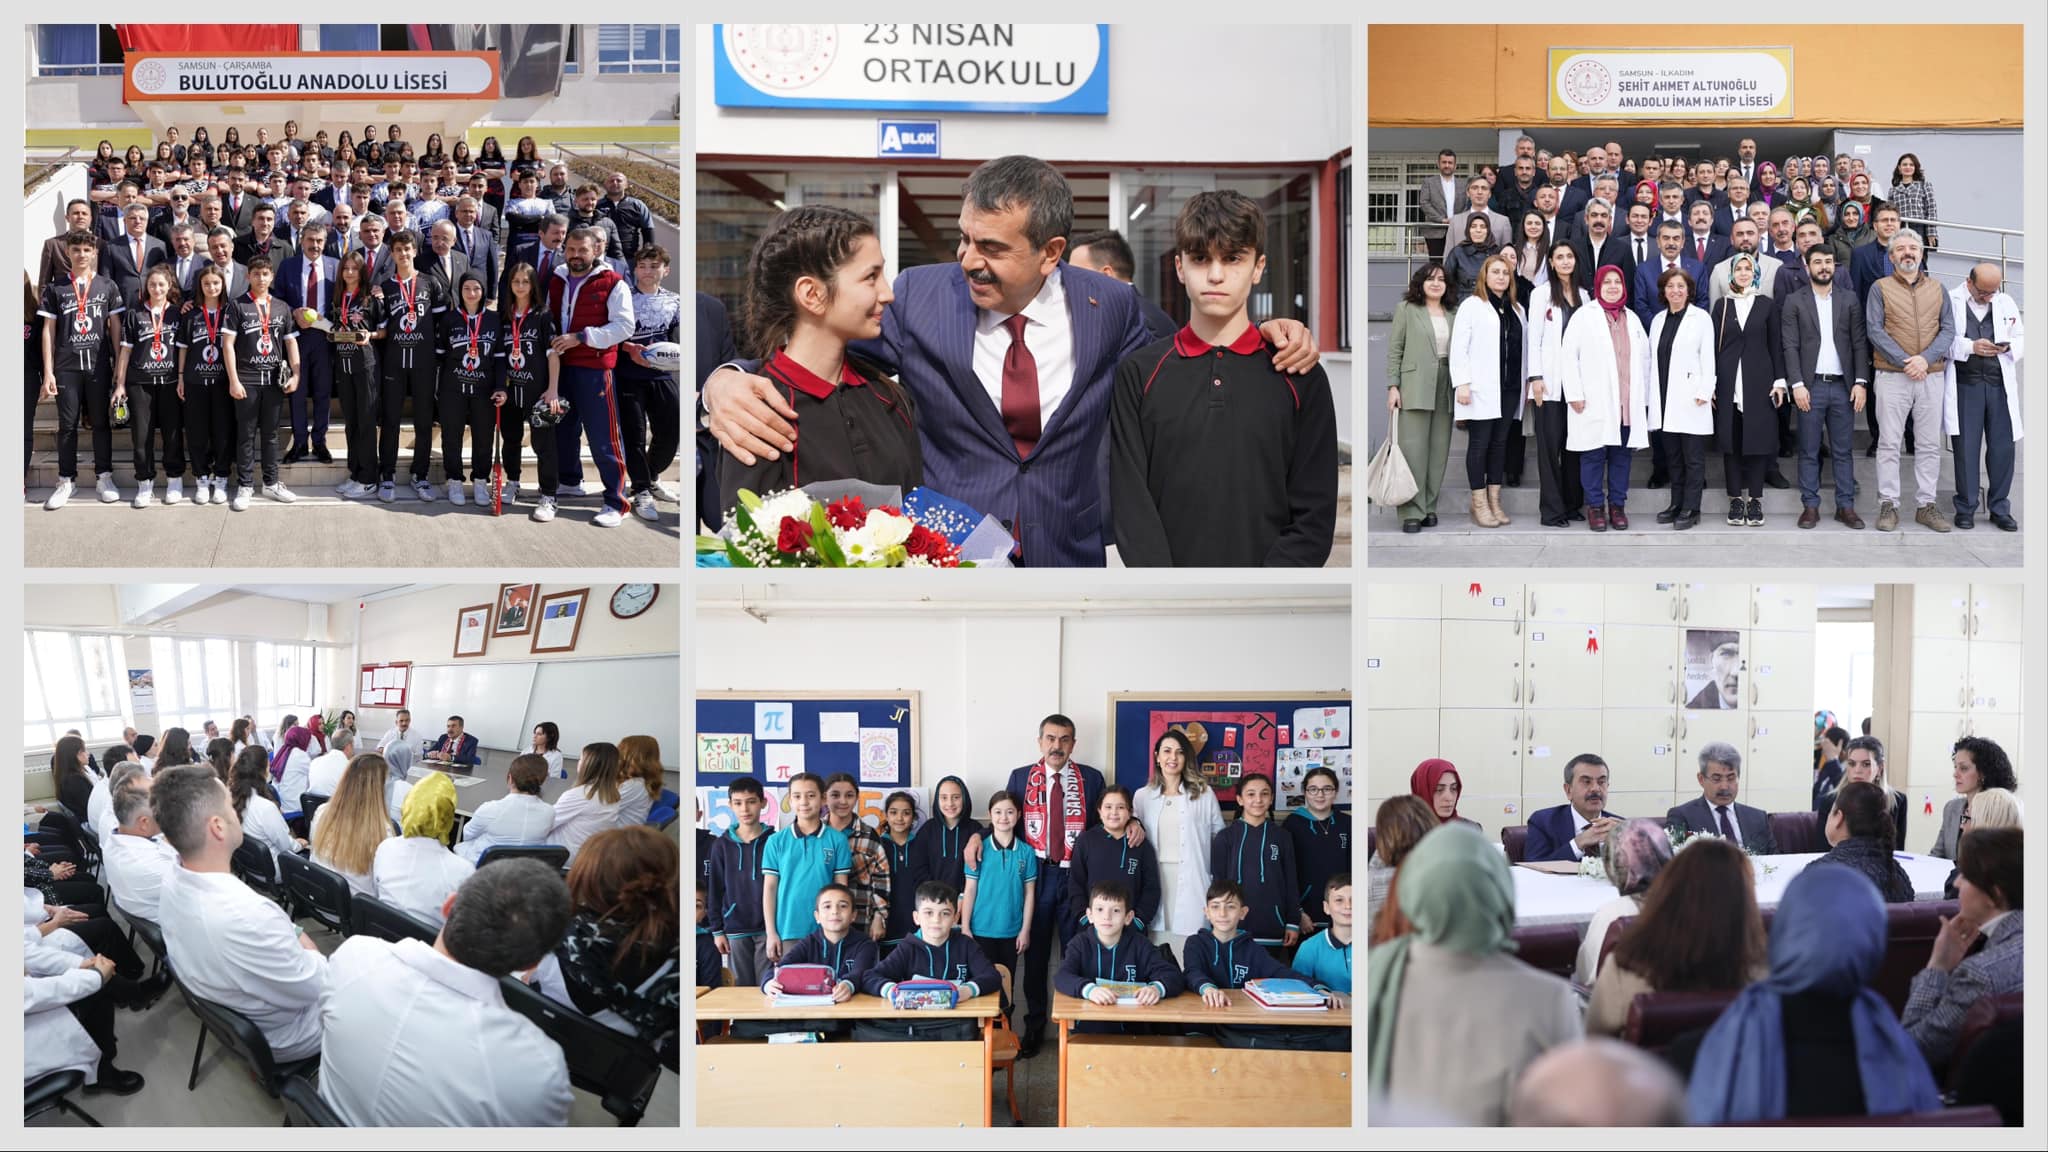 Milli Eğitim Bakanı Yusuf Tekin, Samsun'daki okulları ziyaret etti ve eğitimde kaliteyi artırmak amacıyla öğretmen ve öğrencilerle bir araya geldi.